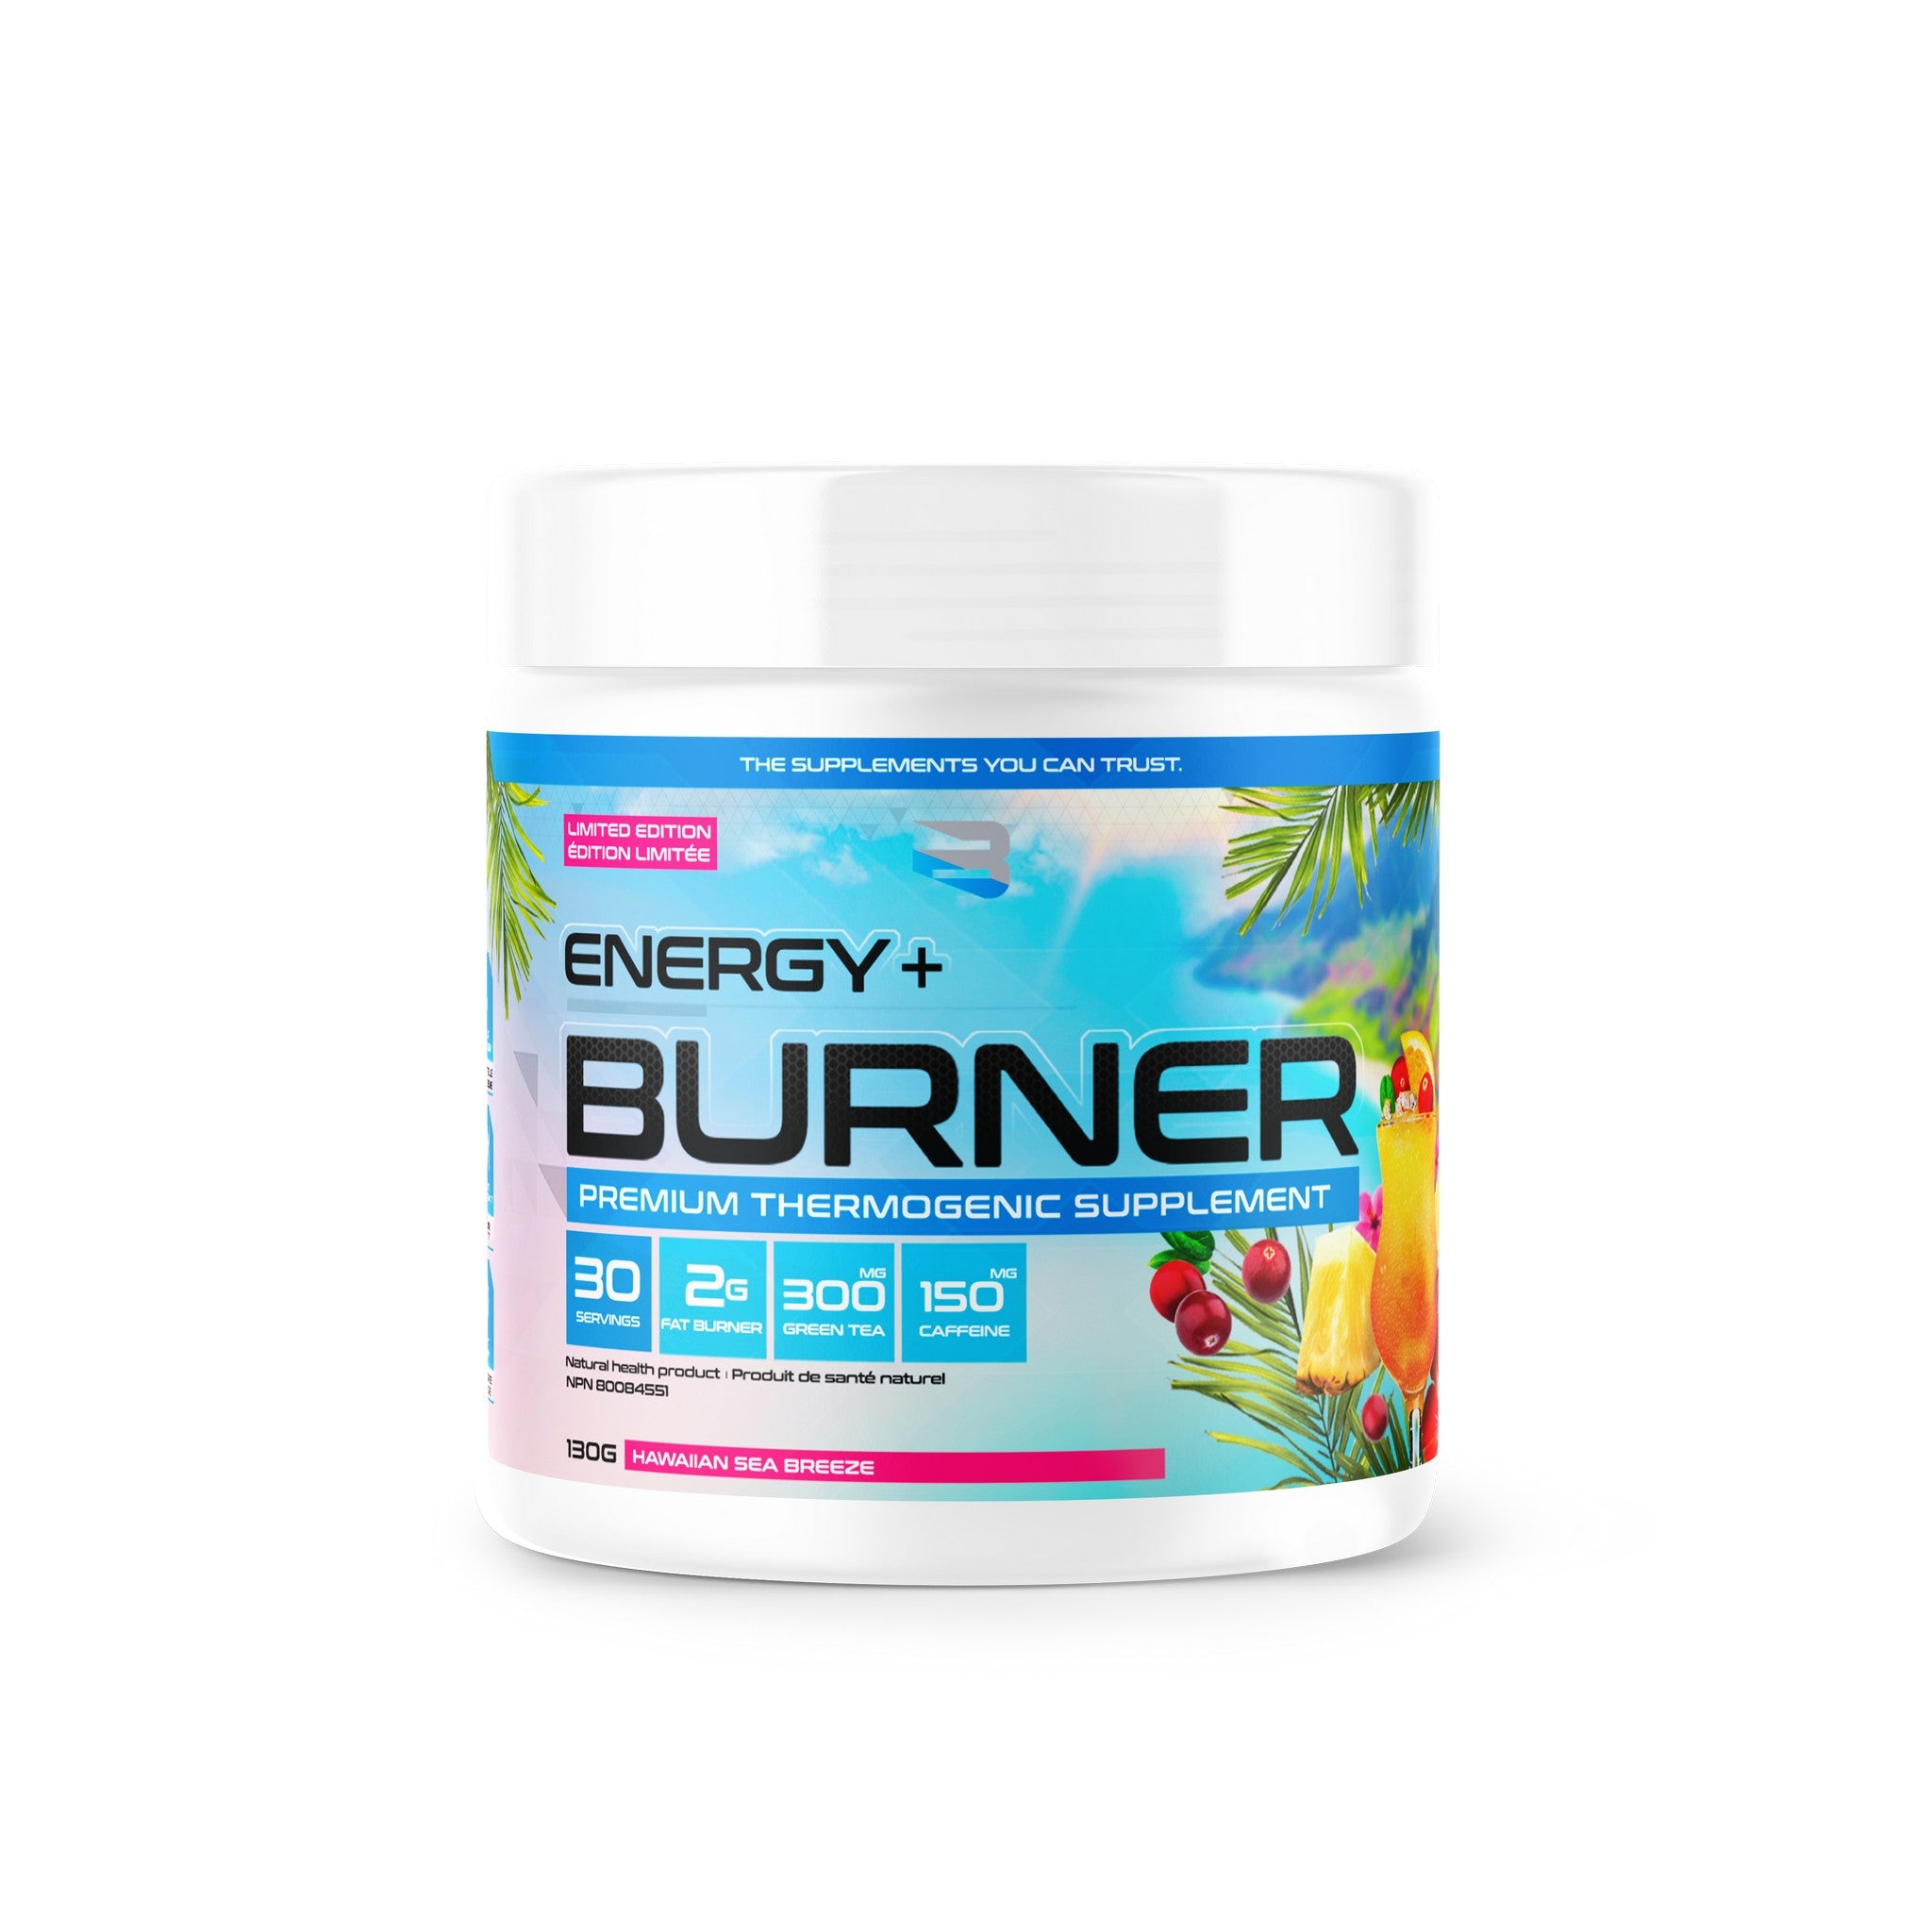 Believe Supplements Energy Burner 30 serving